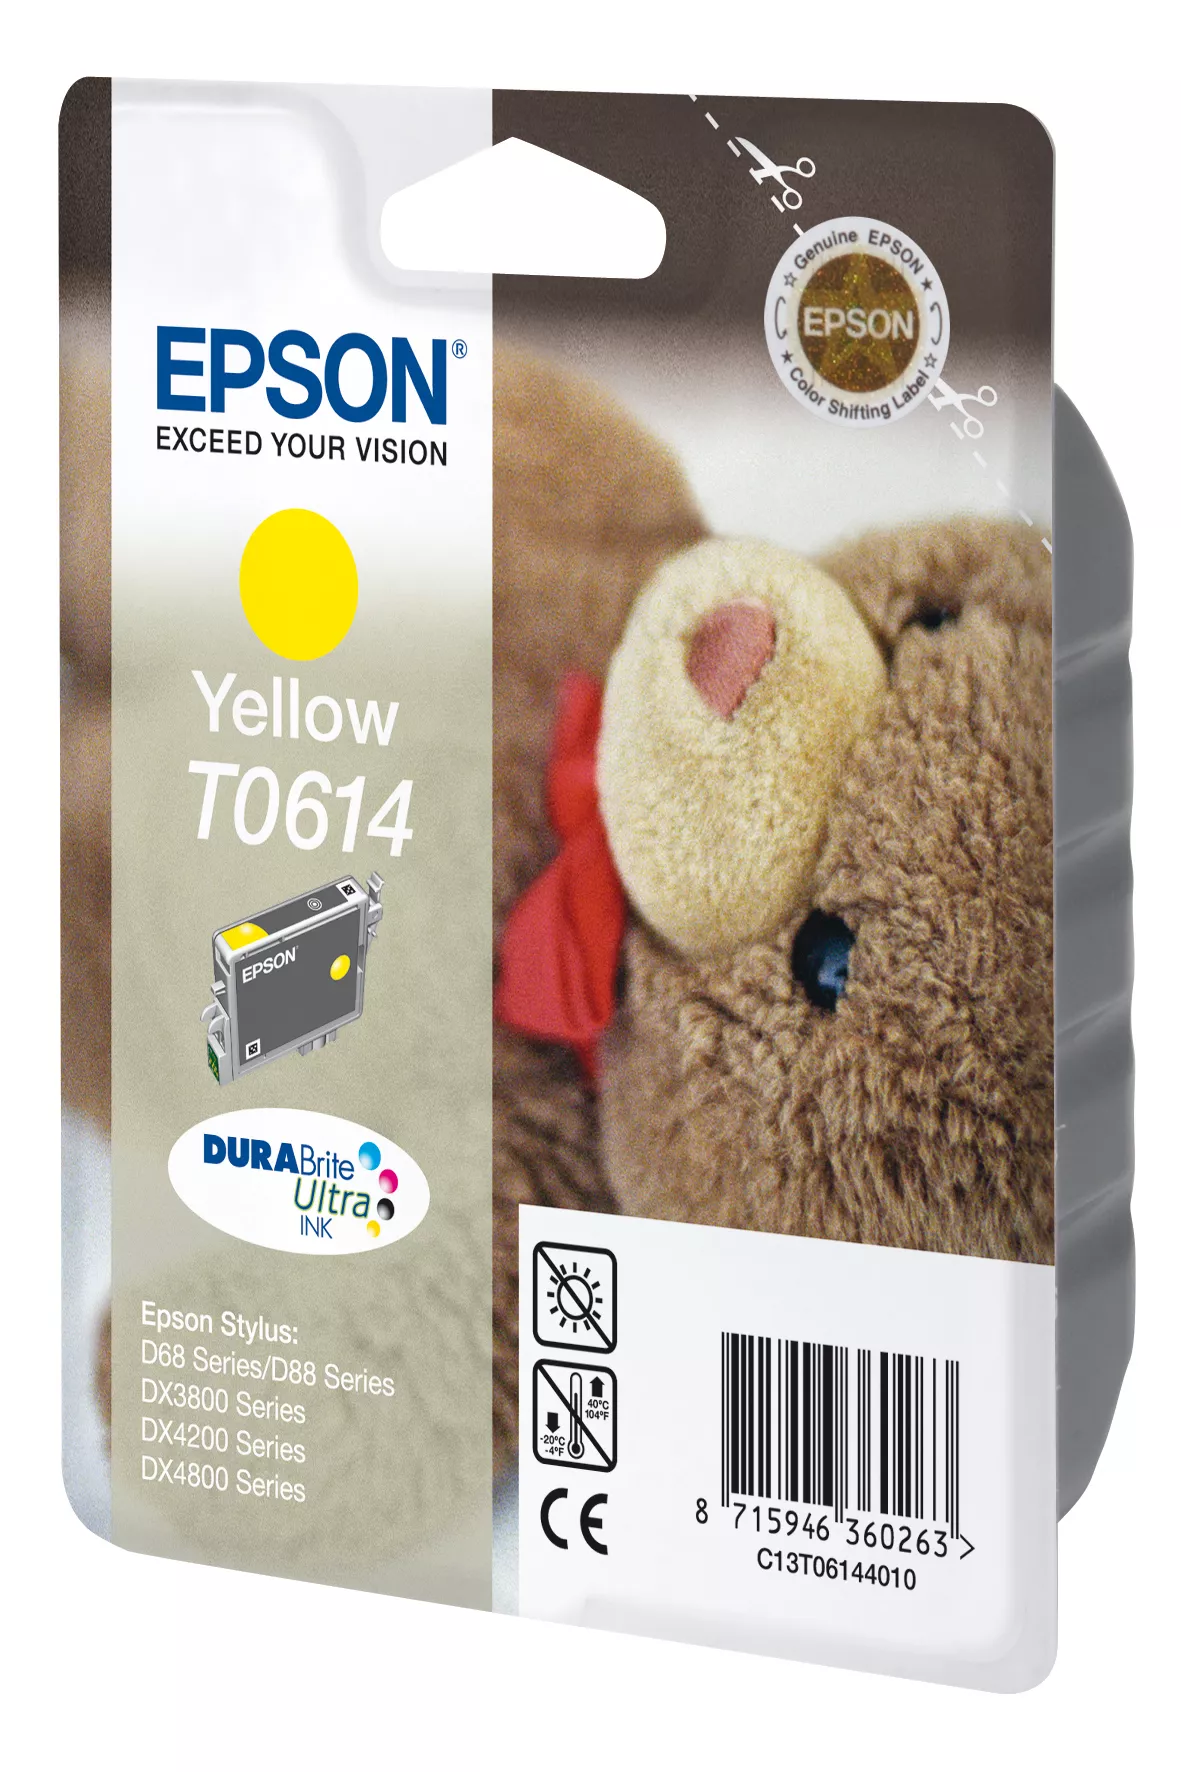 Achat EPSON T0614 cartouche d encre jaune capacité standard sur hello RSE - visuel 3